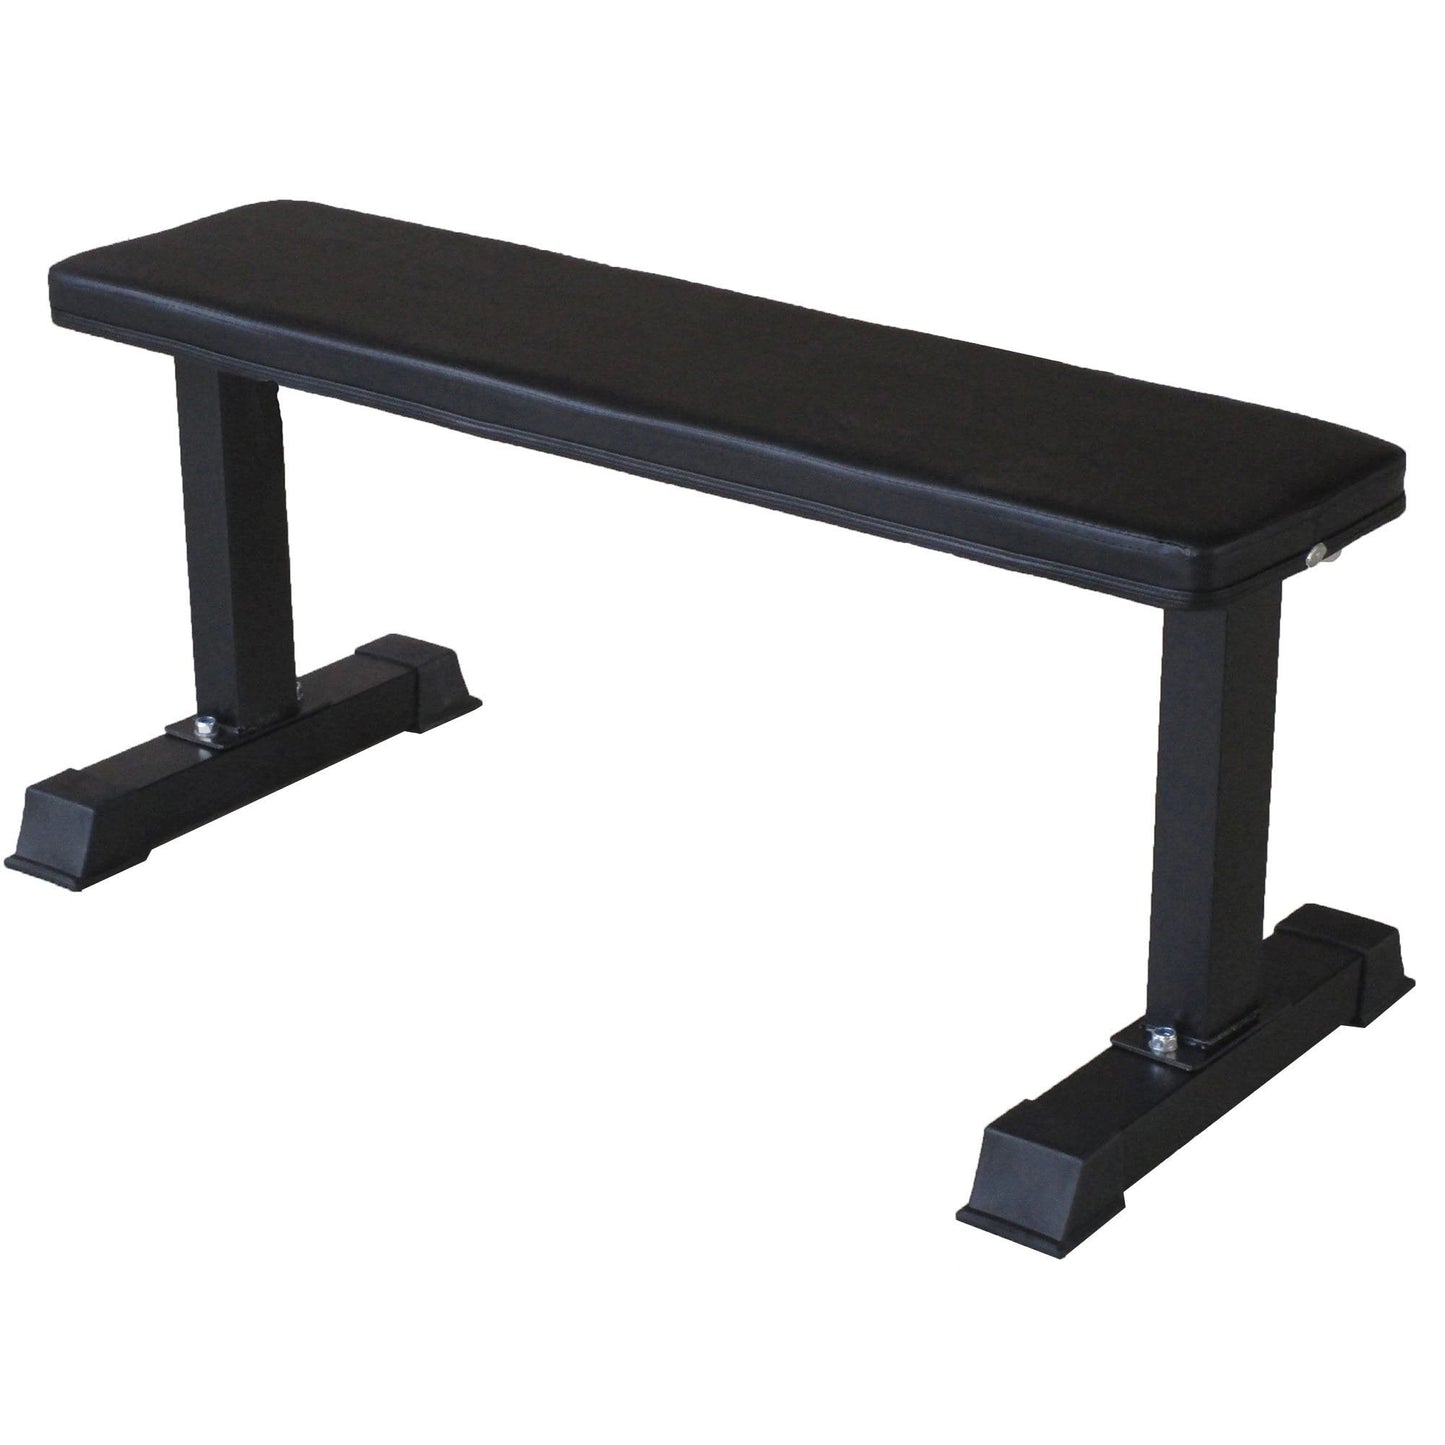 Prosportsae Flat Bench for Strength Training Workouts (Black Color) - Prosportsae.com